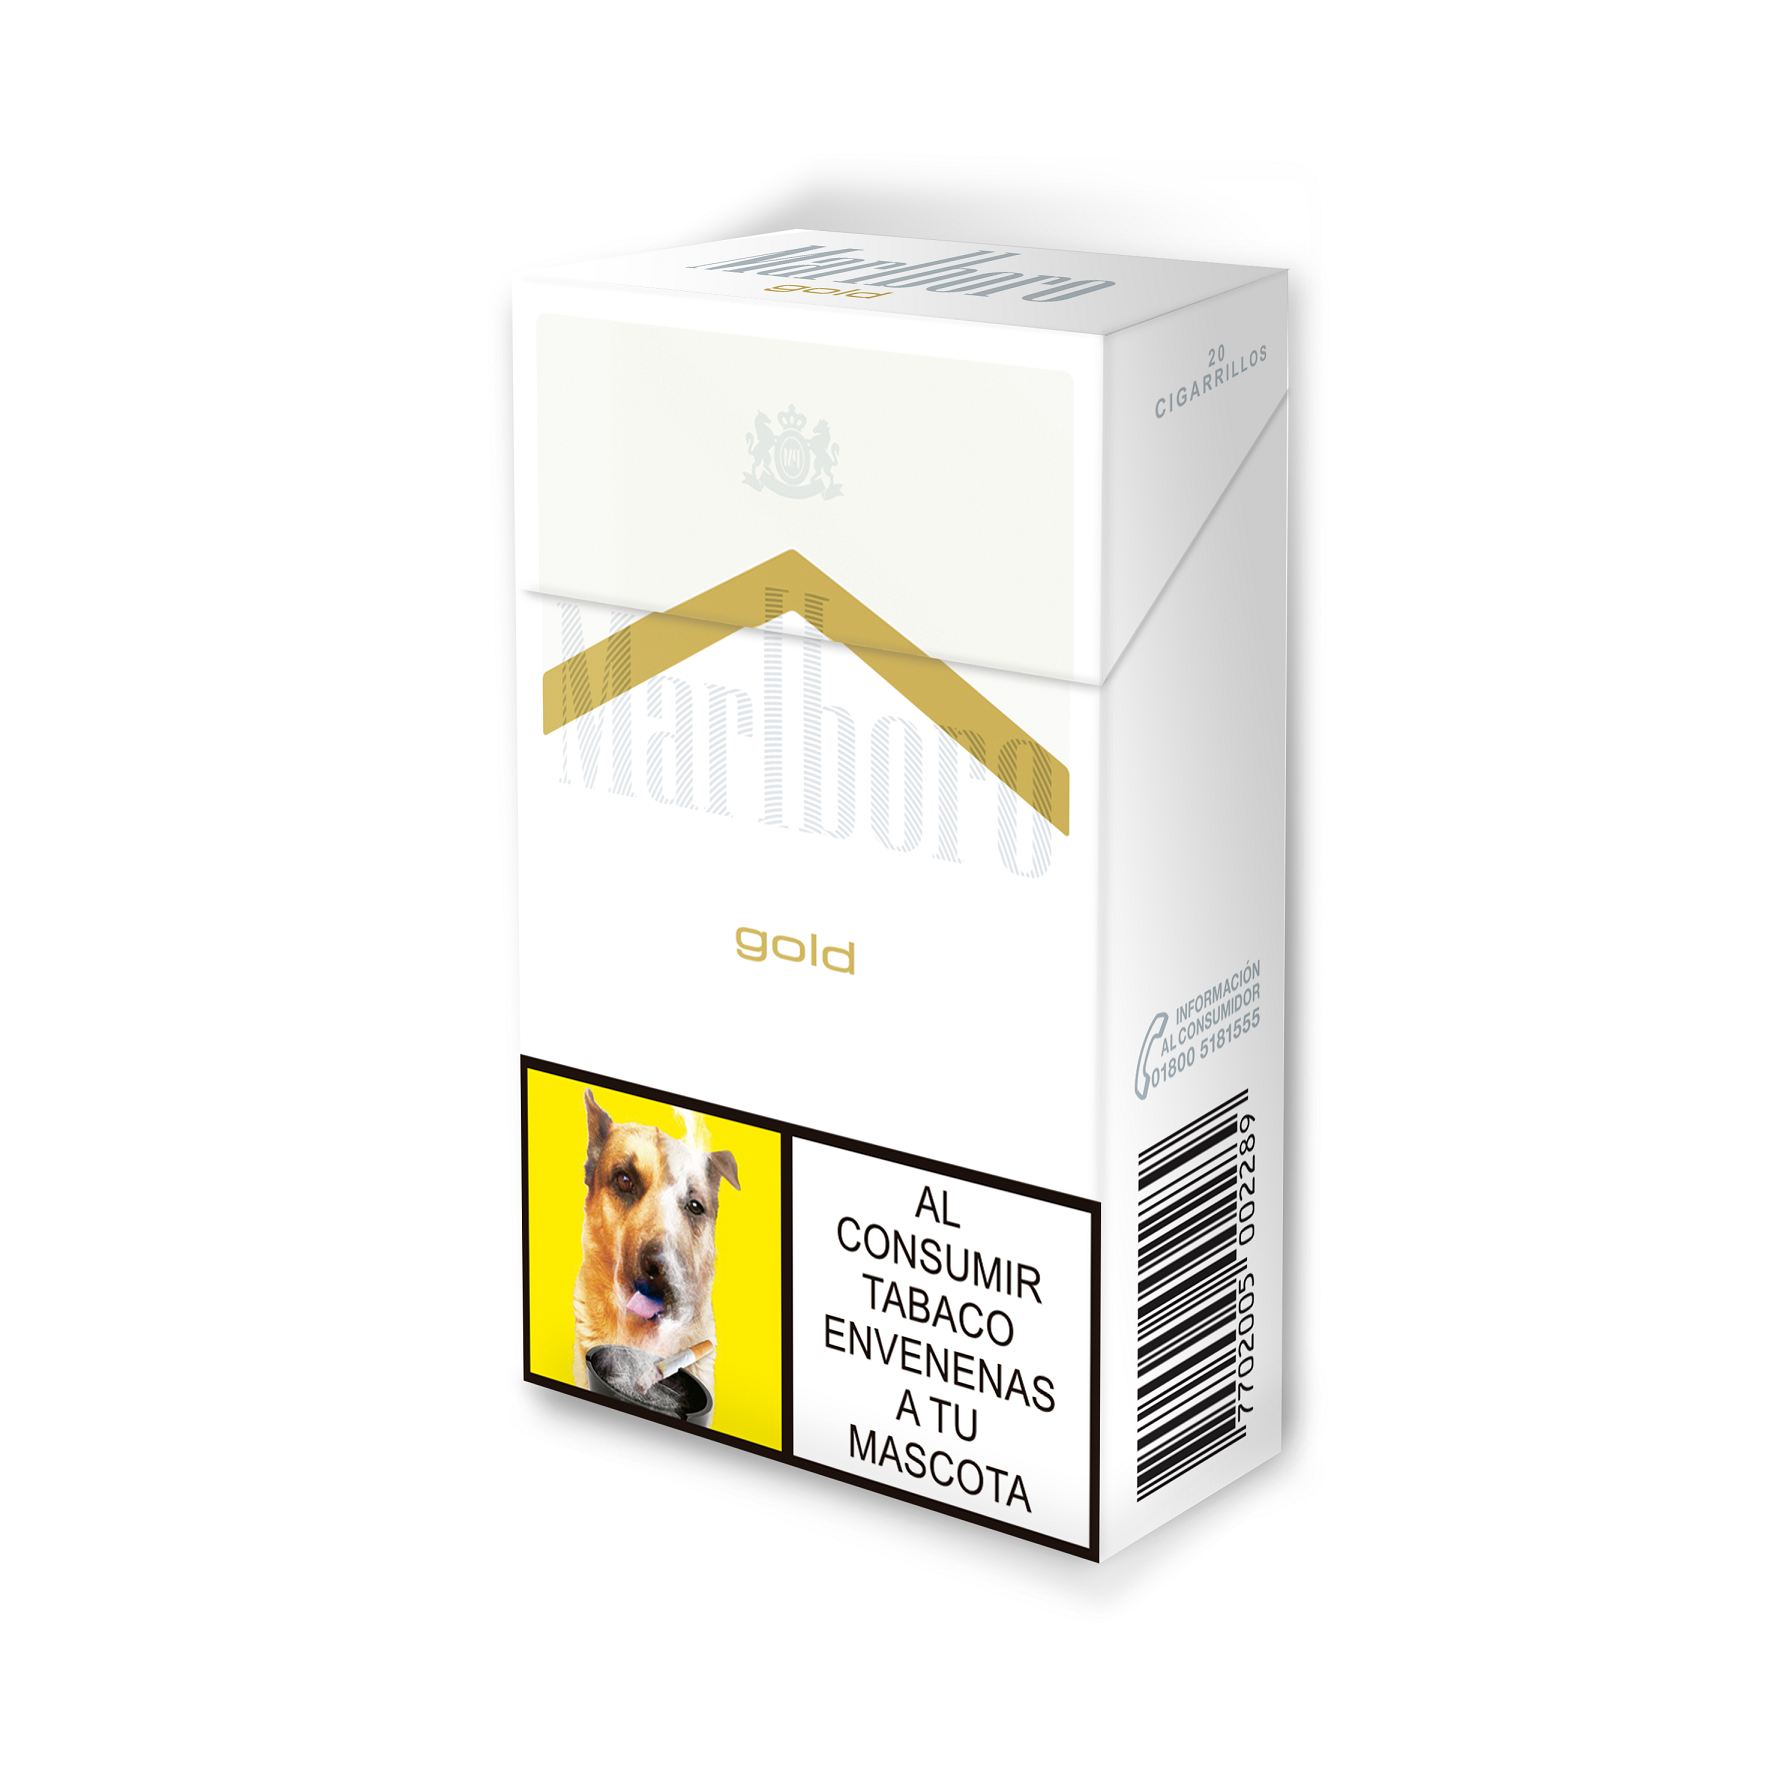 Cigarrillo Marlboro Gold Original Ks Box 60dp x10Un x20cig Nueva Presentación